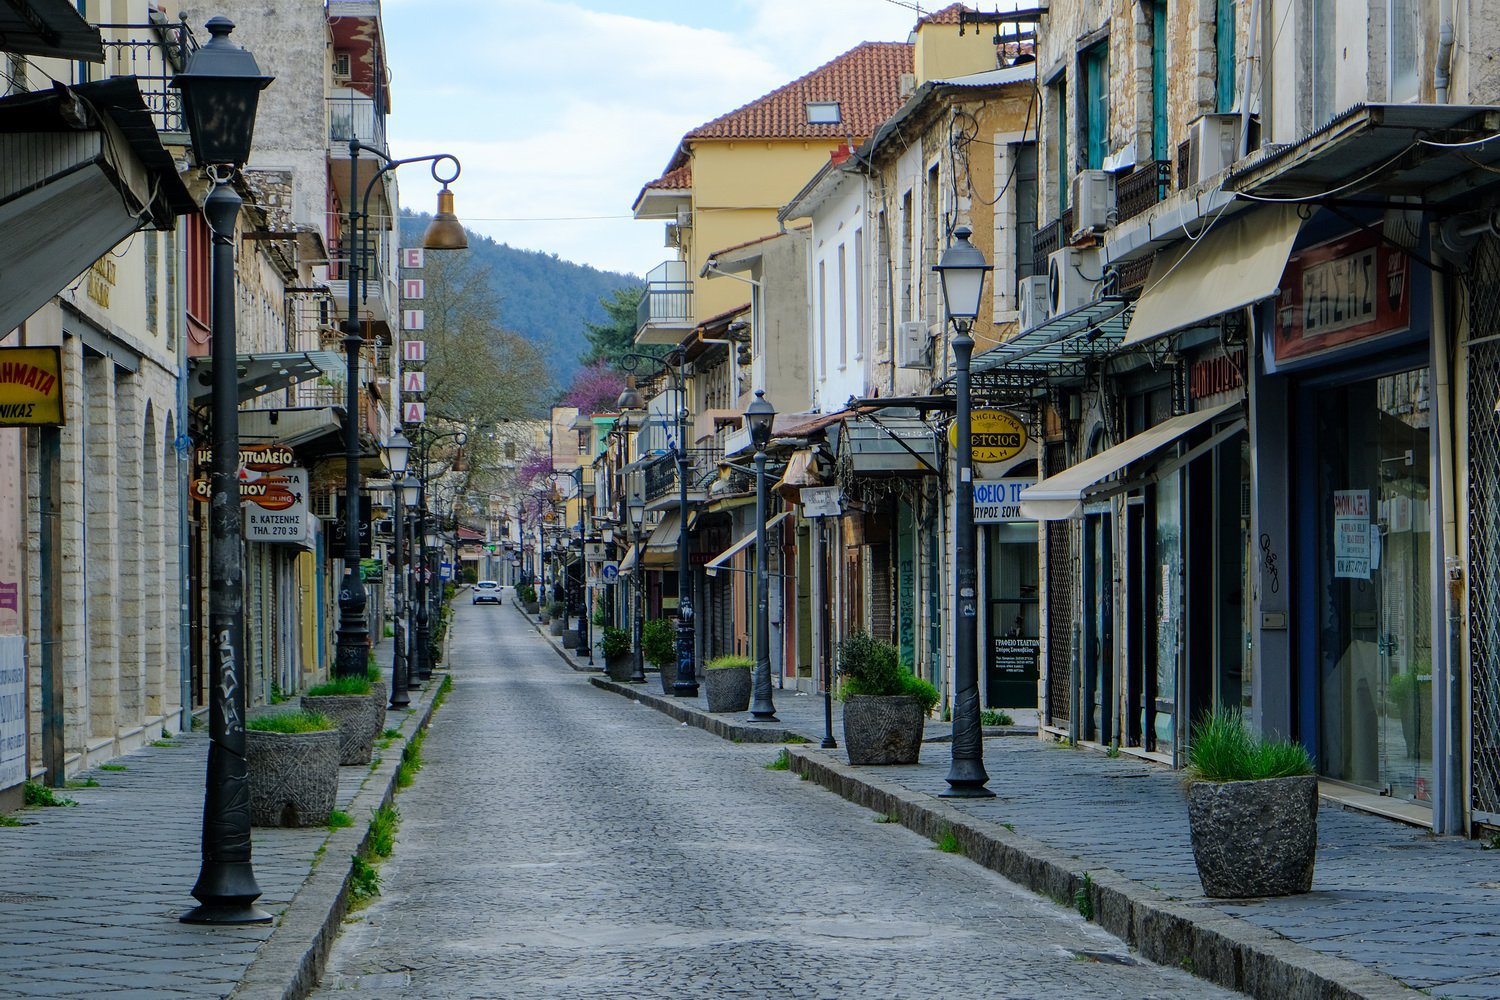 The historic center of Ioannina